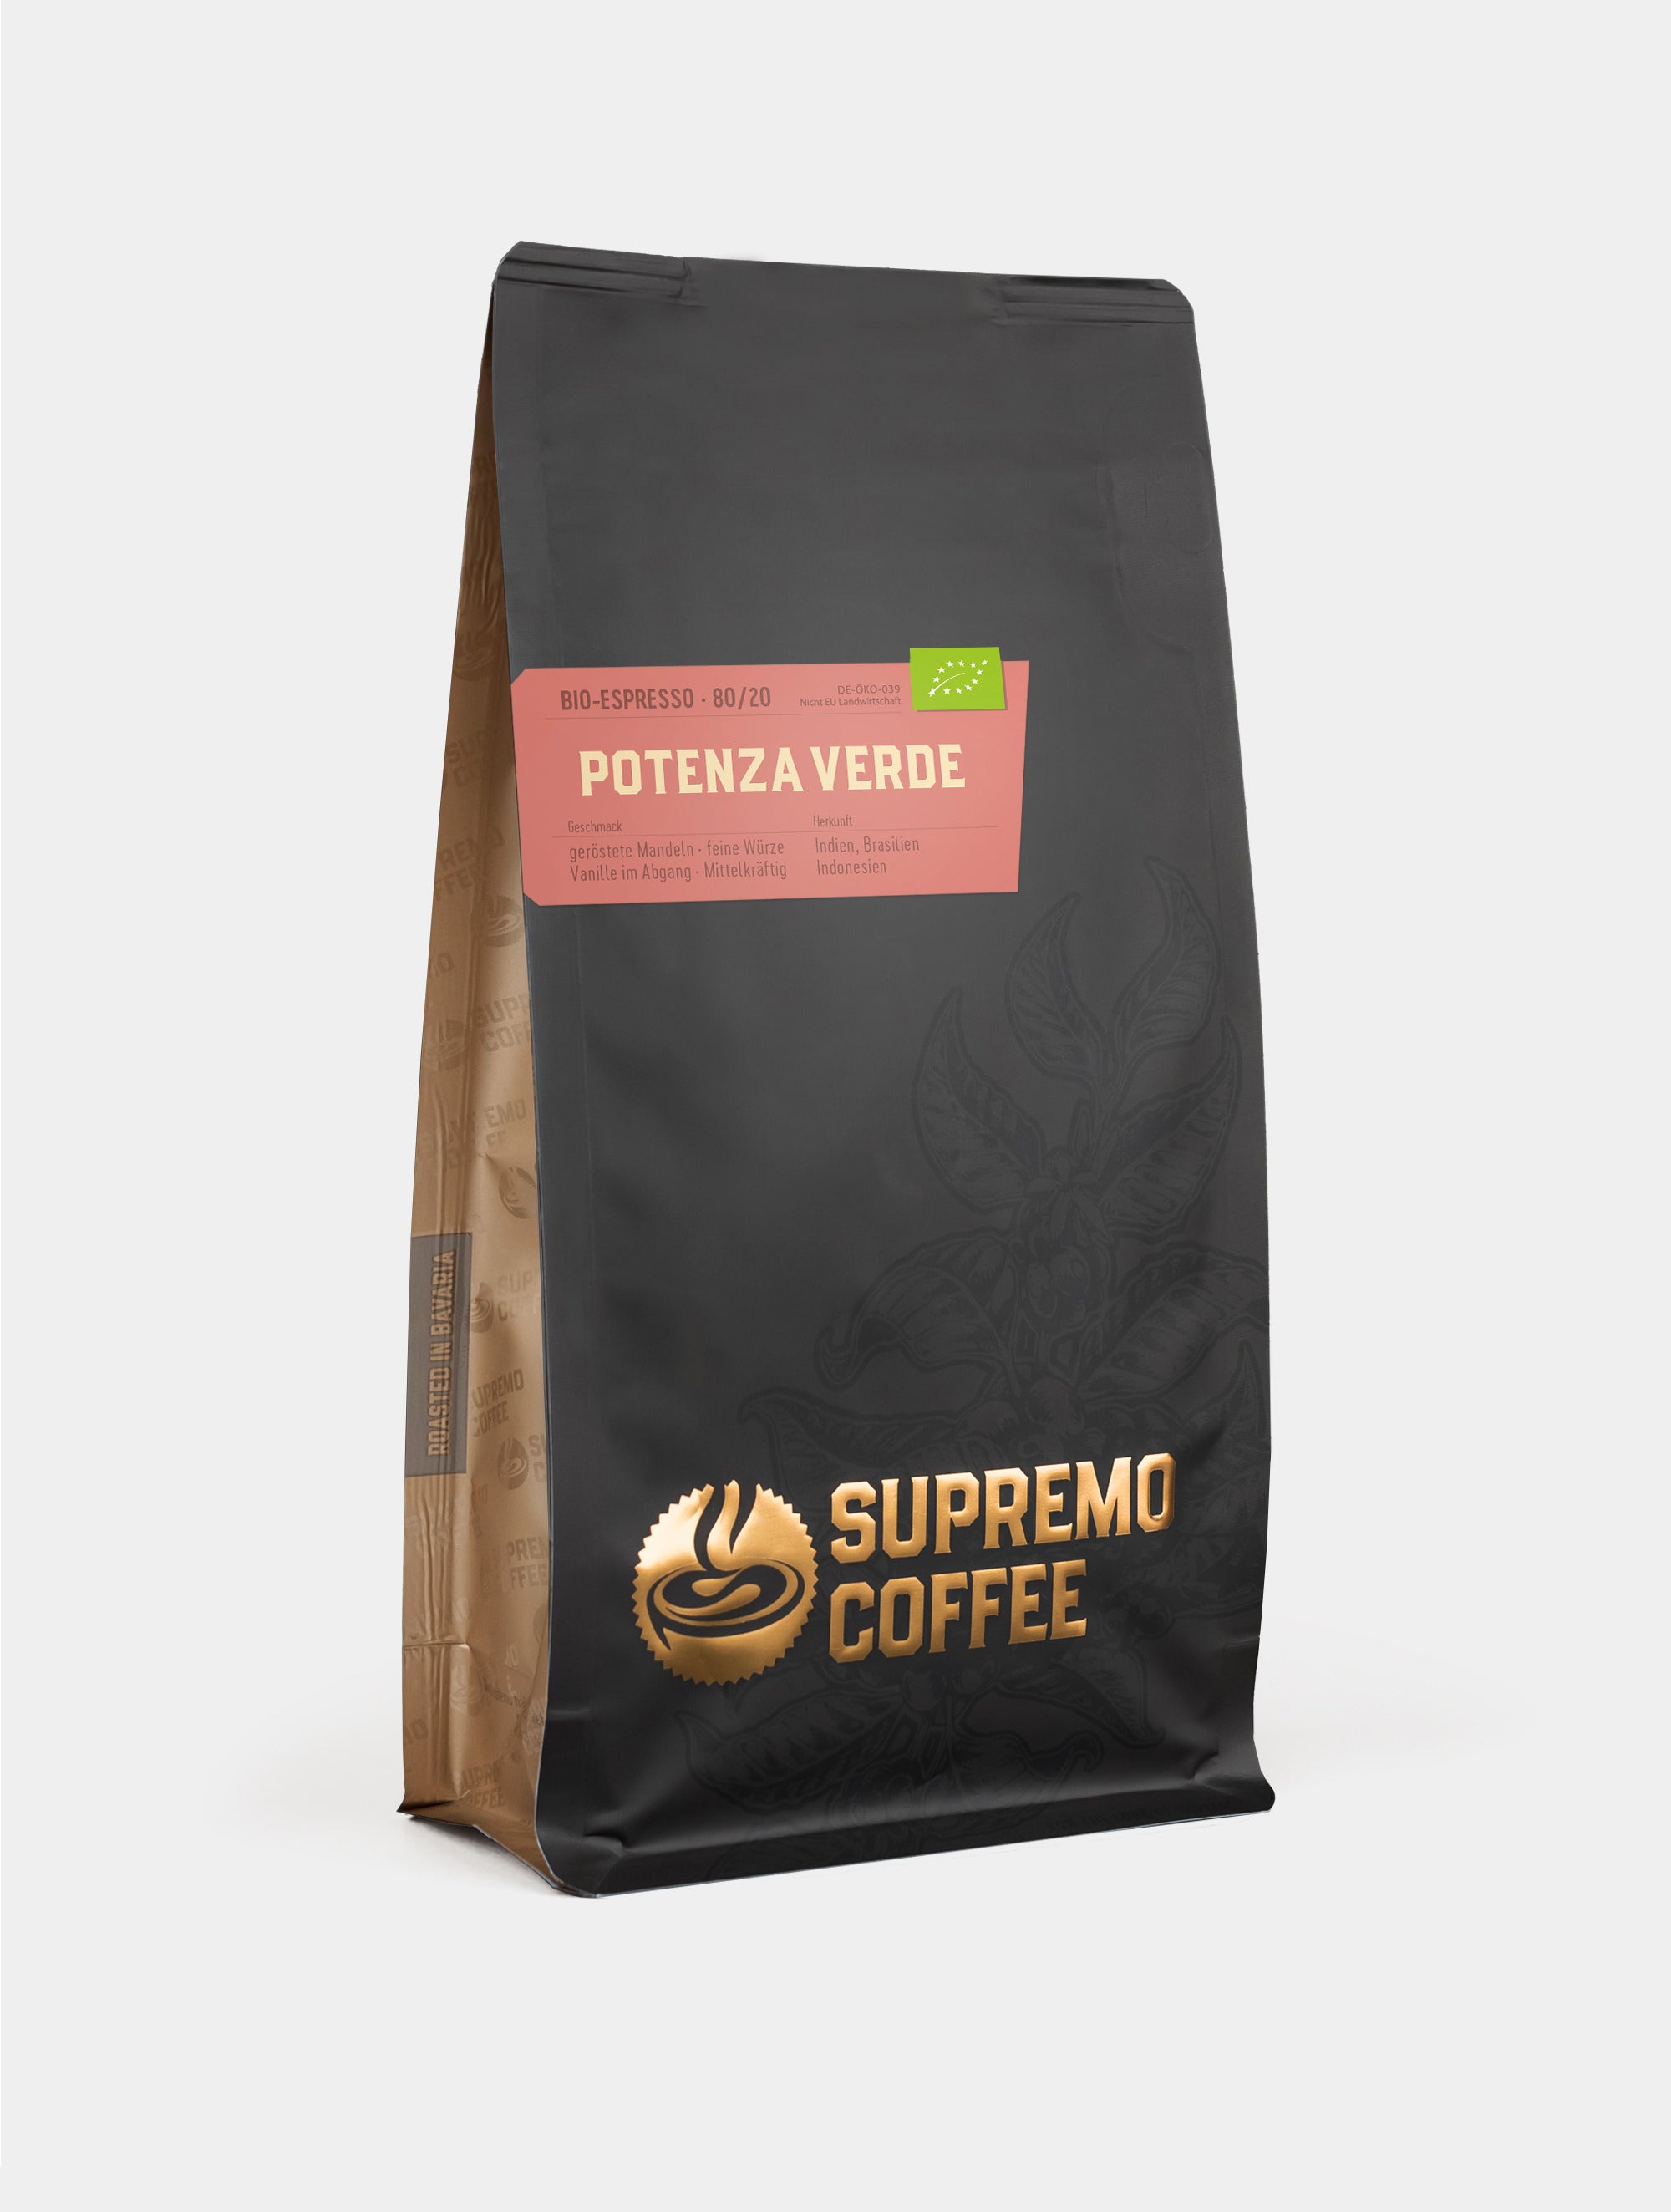 Potenza Verde, Bio-Espresso 80/20 | SUPREMO Coffee